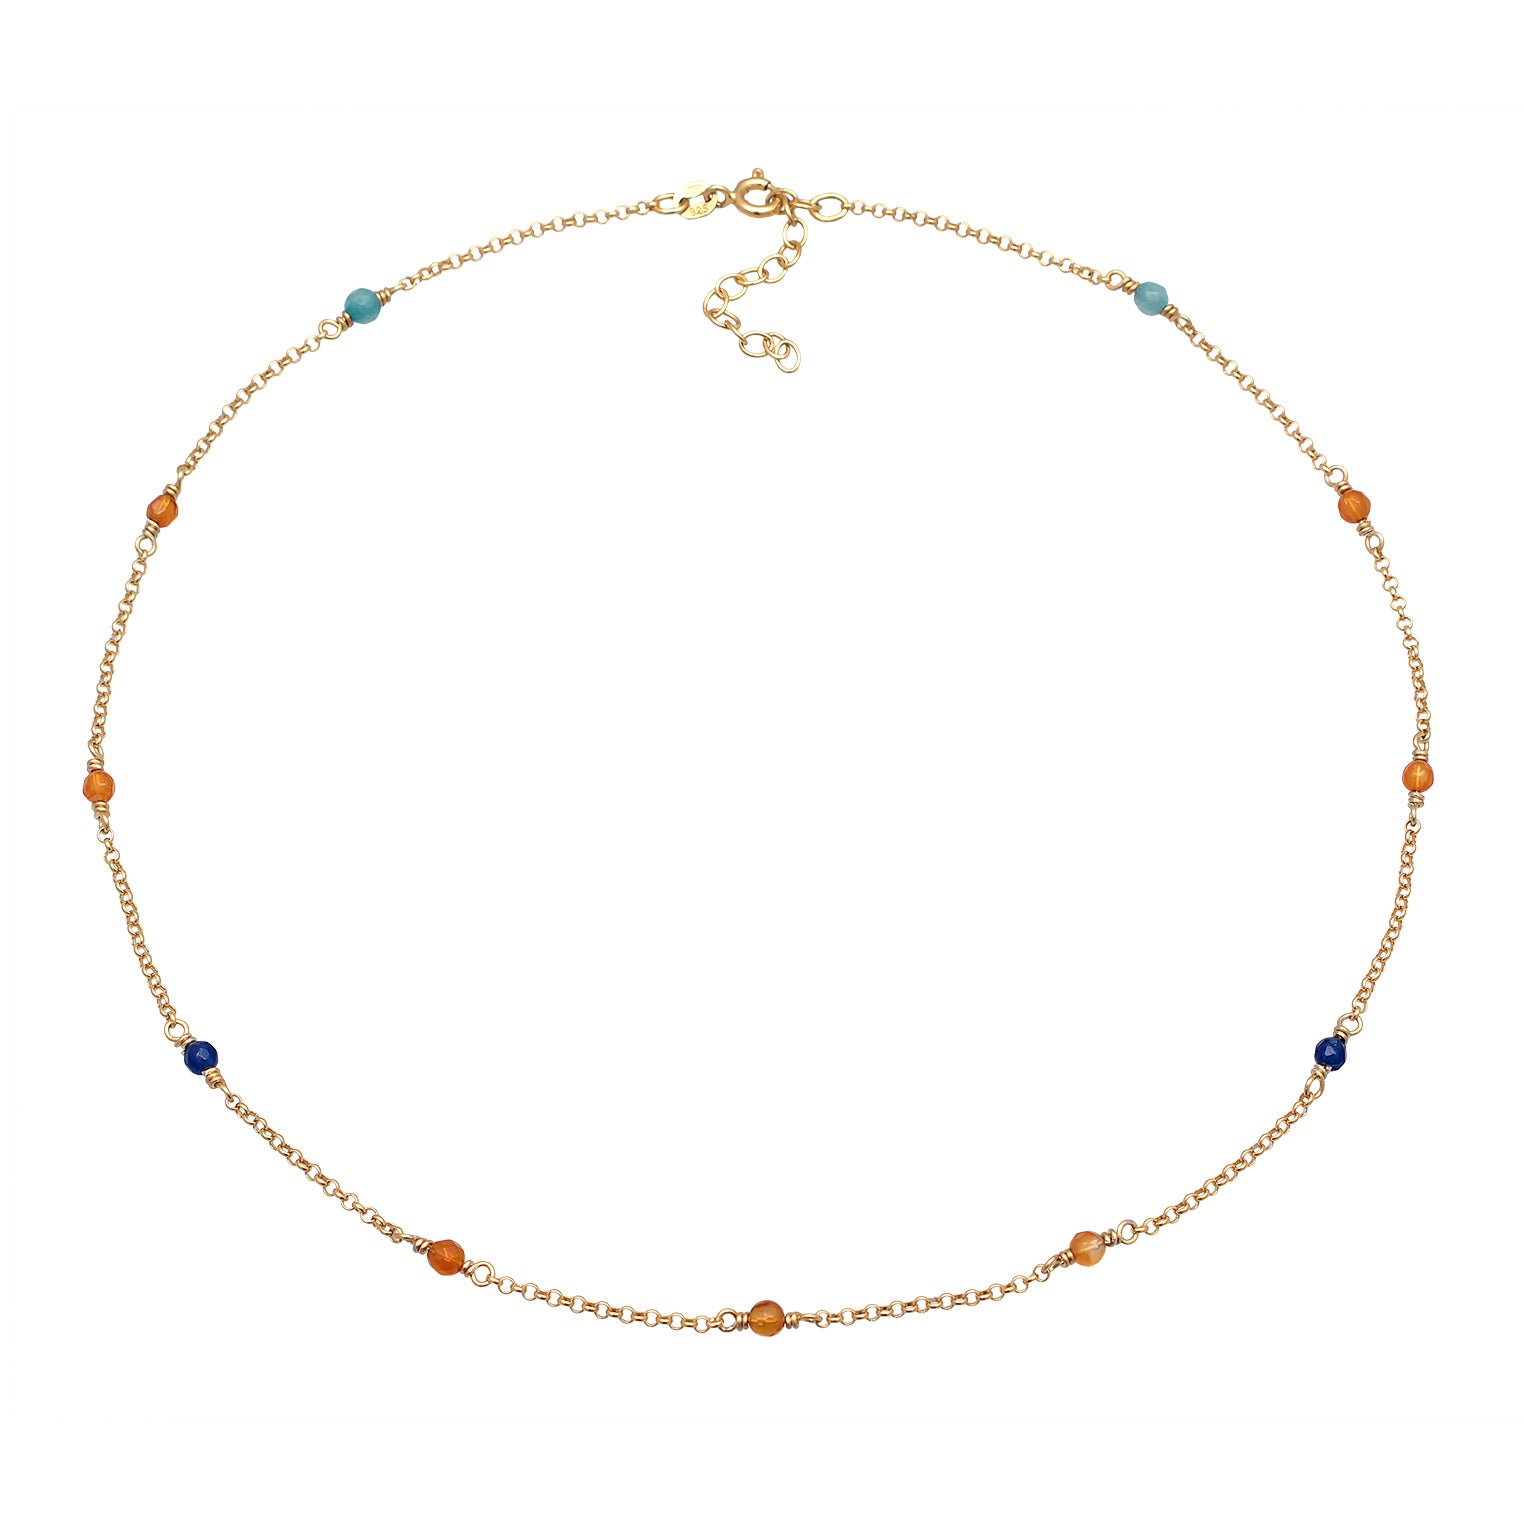 Zweifarbig - Elli | Halskette Beads | Achat (Bunt) | 925er Sterling Silber Vergoldet